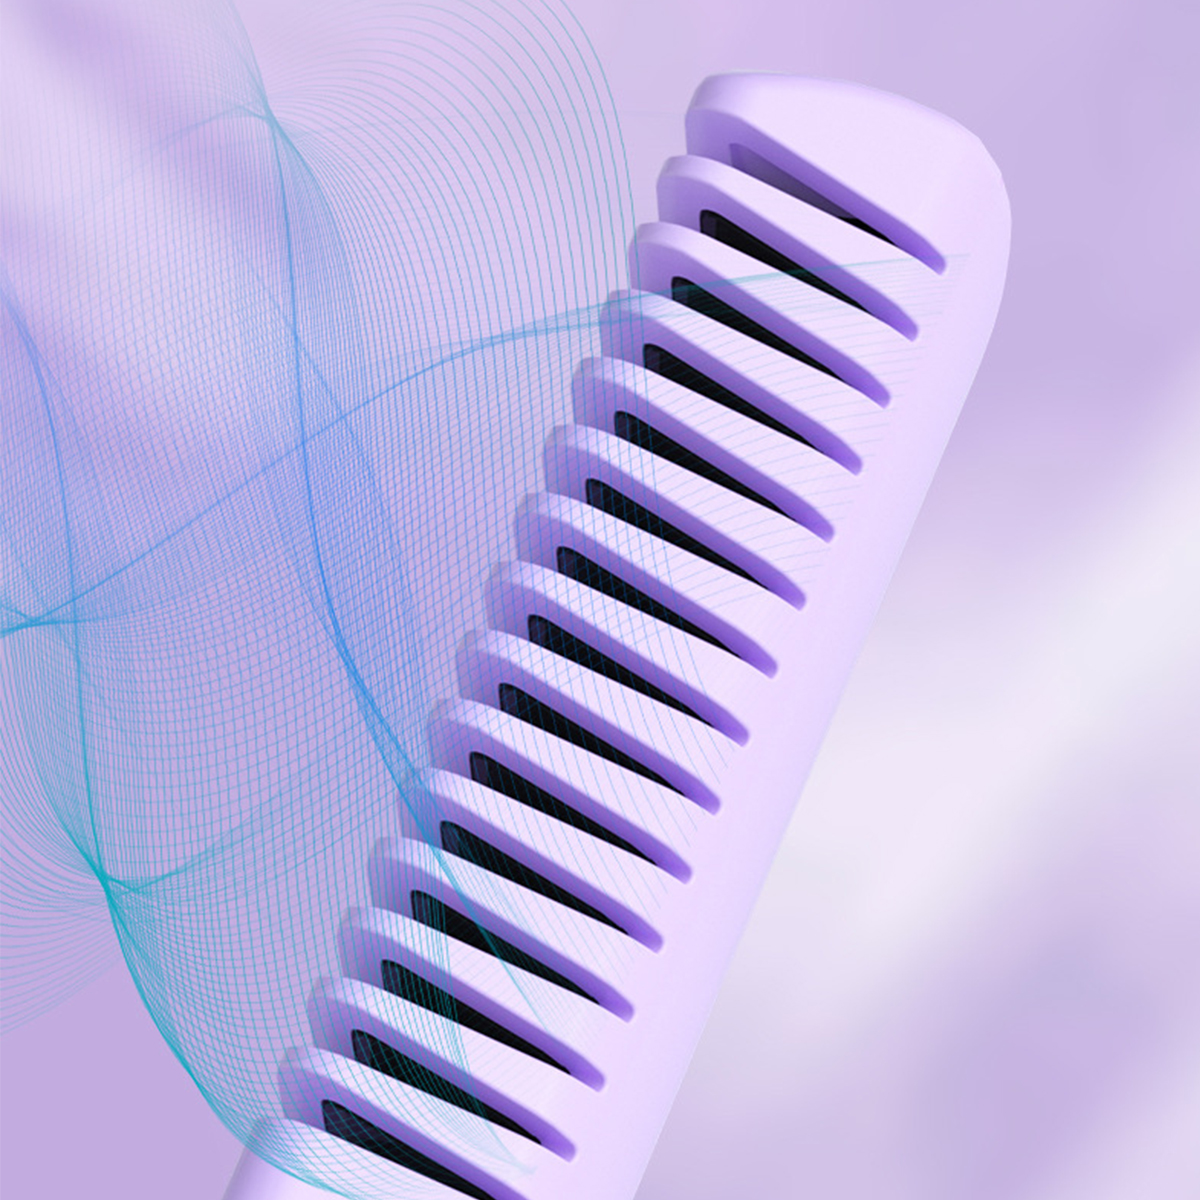 BRIGHTAKE Drahtloser Haarglätter-Kamm Haarglätter, | | Kompakt und USB-Aufladbar Temperaturstufen: 3 Keramikbeschichtung